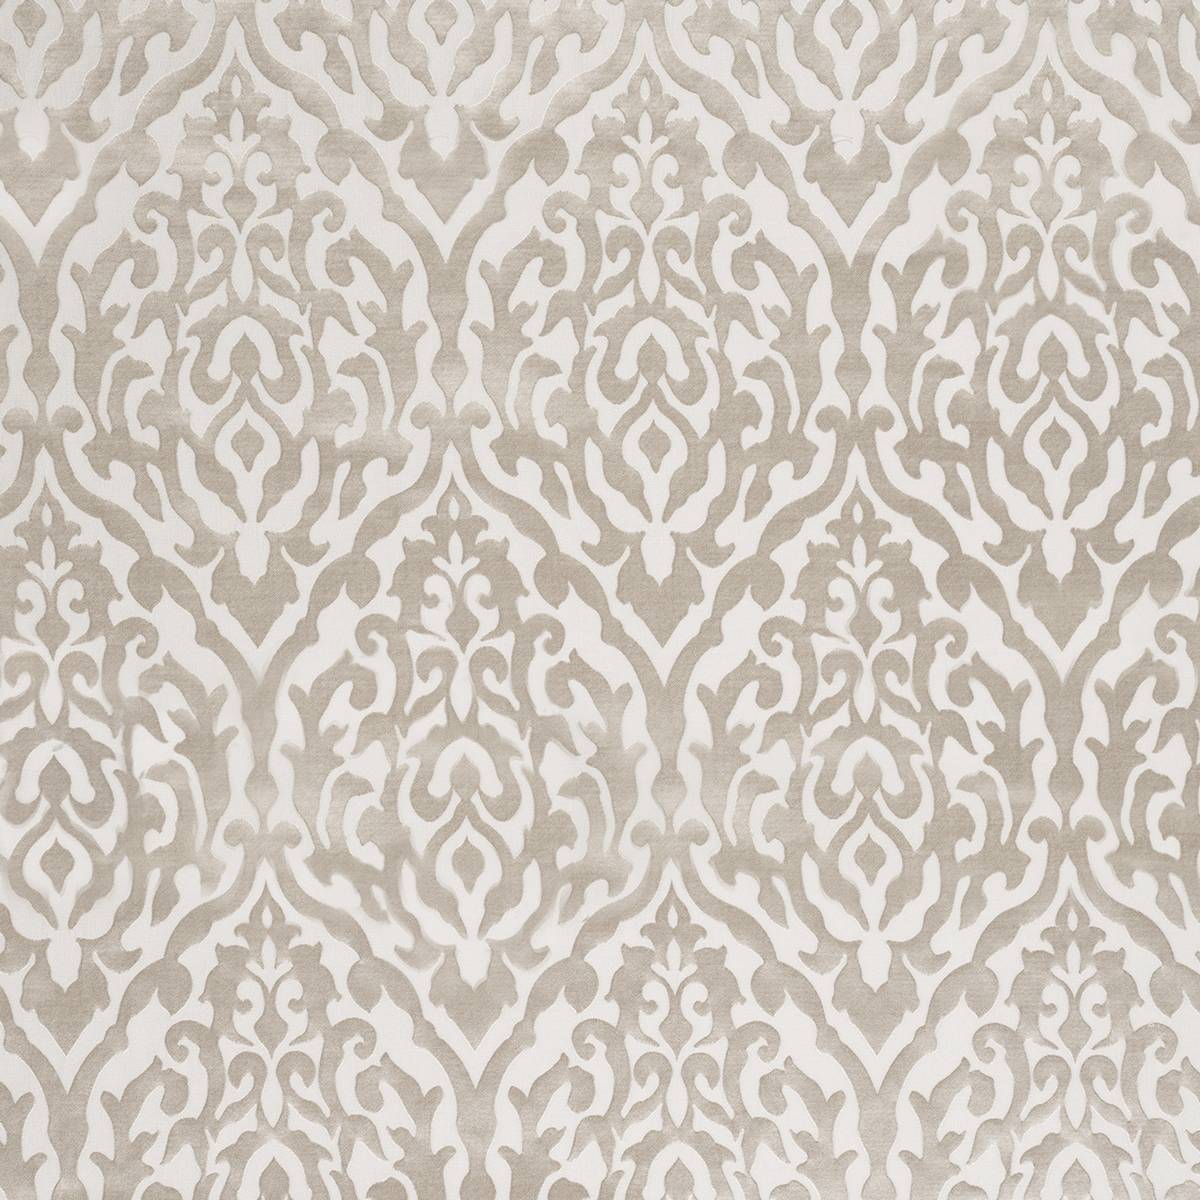 Dahlia Linen Fabric by Ashley Wilde